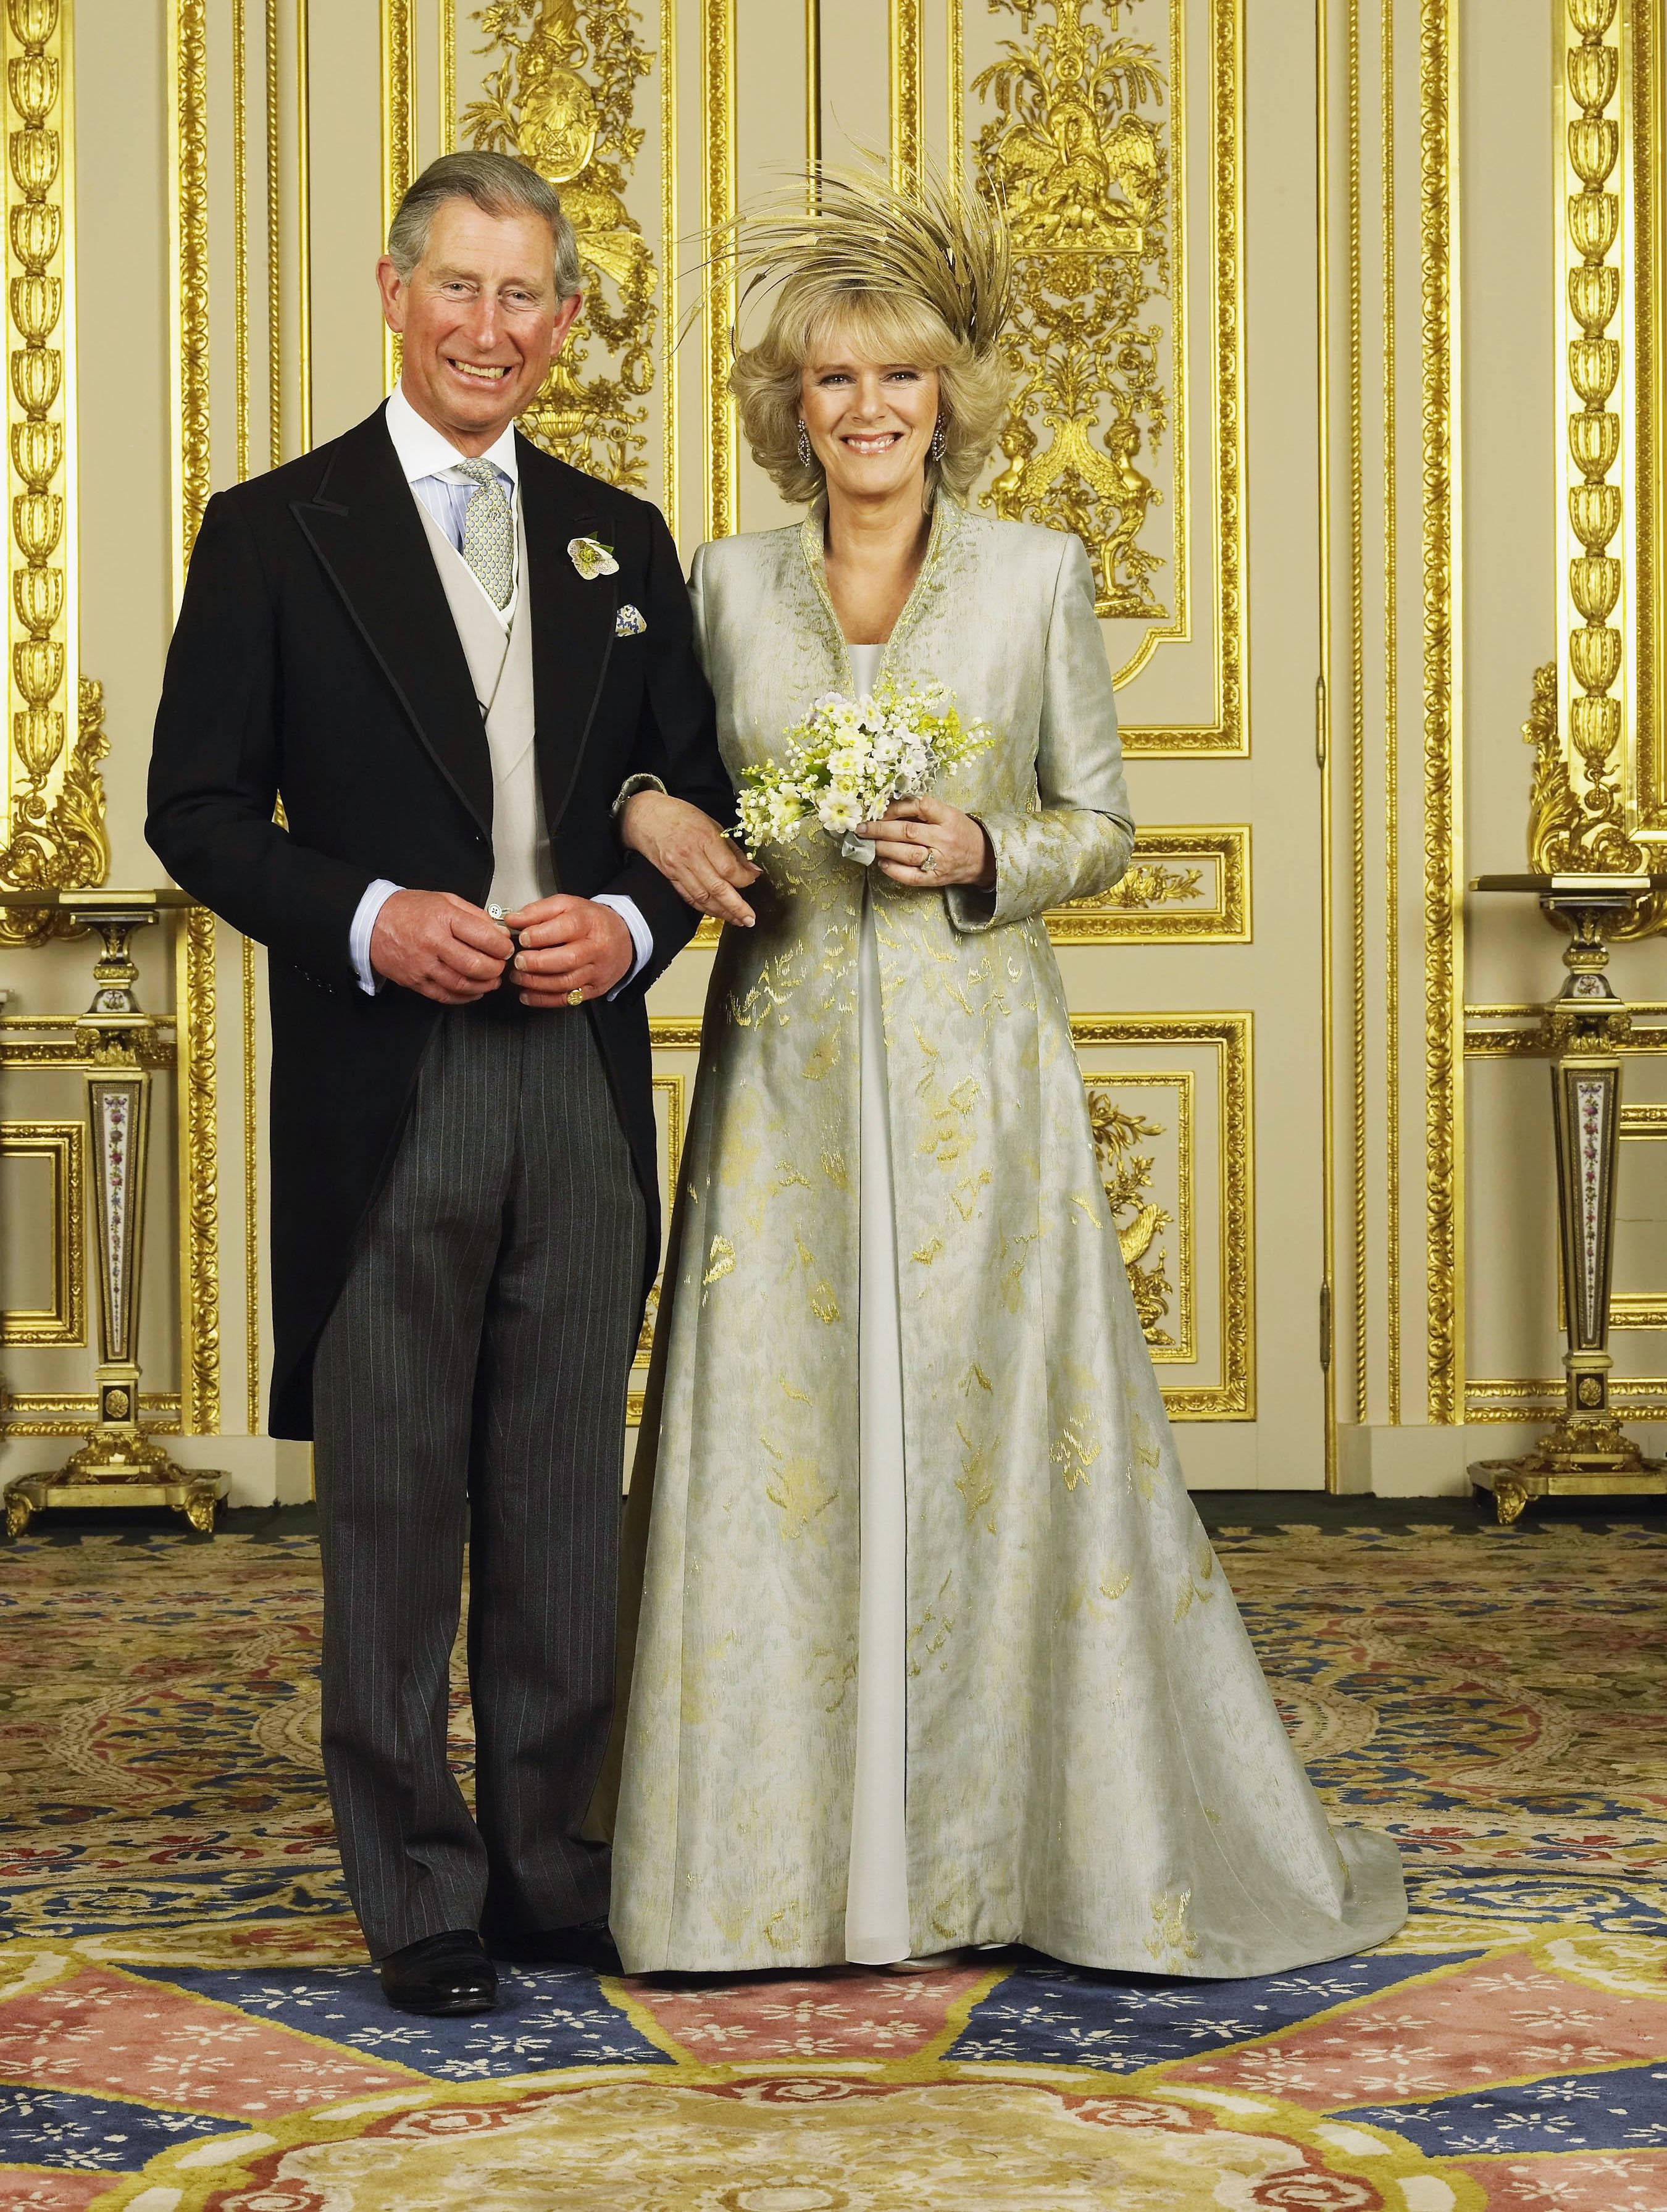 El príncipe Charles y Camilla, duquesa de Cornualles, en el Salón Blanco del Castillo de Windsor después de su ceremonia de boda, el 9 de abril de 2005 en Windsor, Inglaterra. | Foto: Getty Images